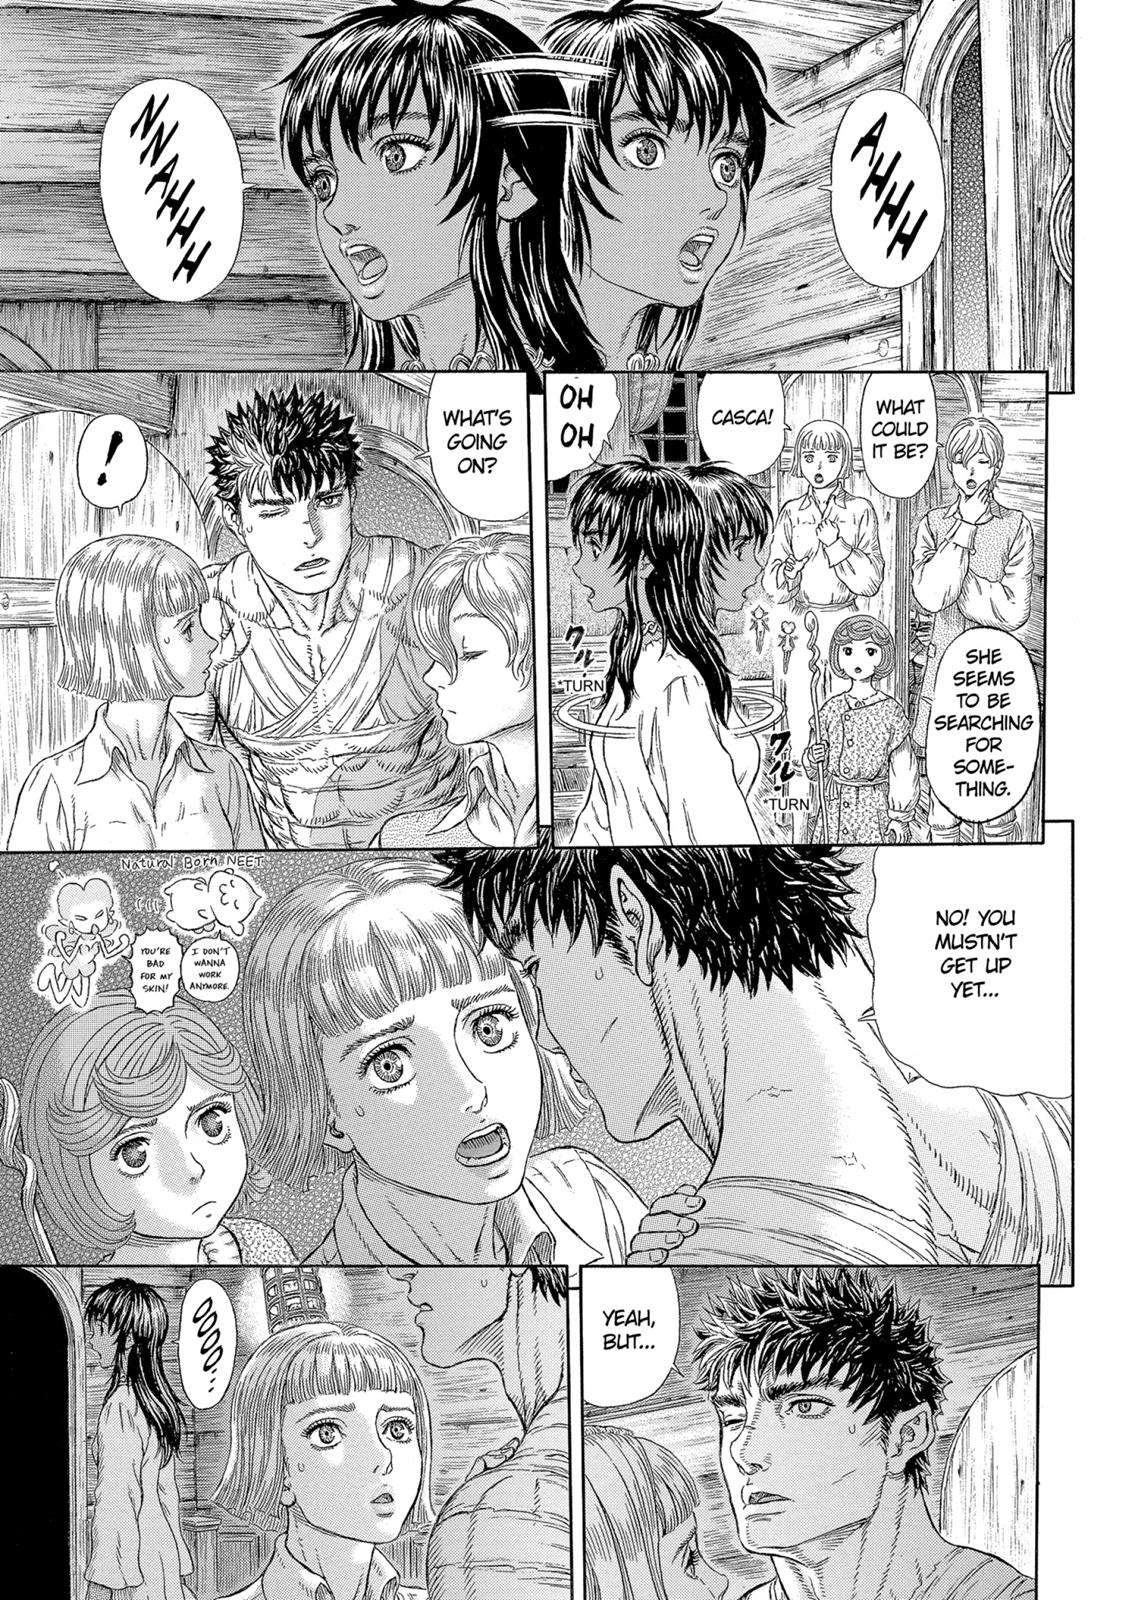 Berserk Manga Chapter 328 image 09